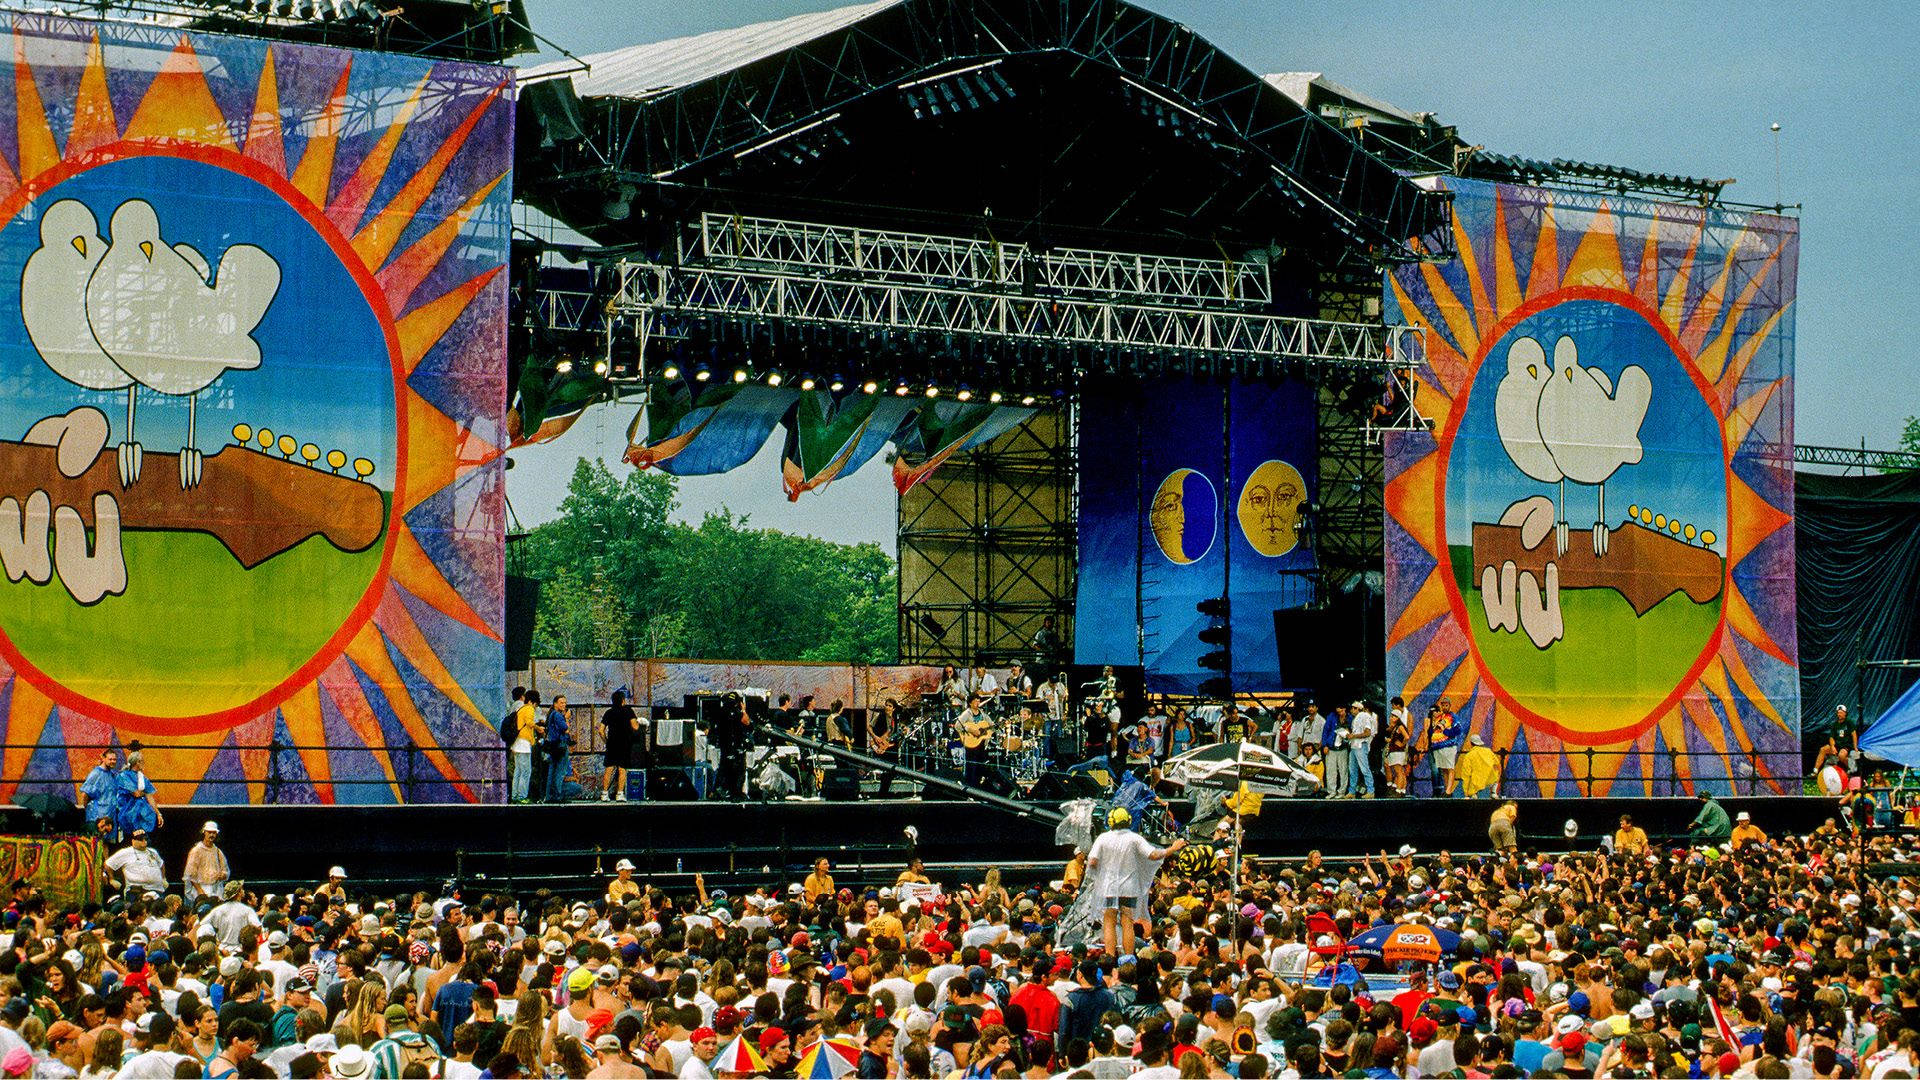 Woodstockfestival Bühne Wallpaper